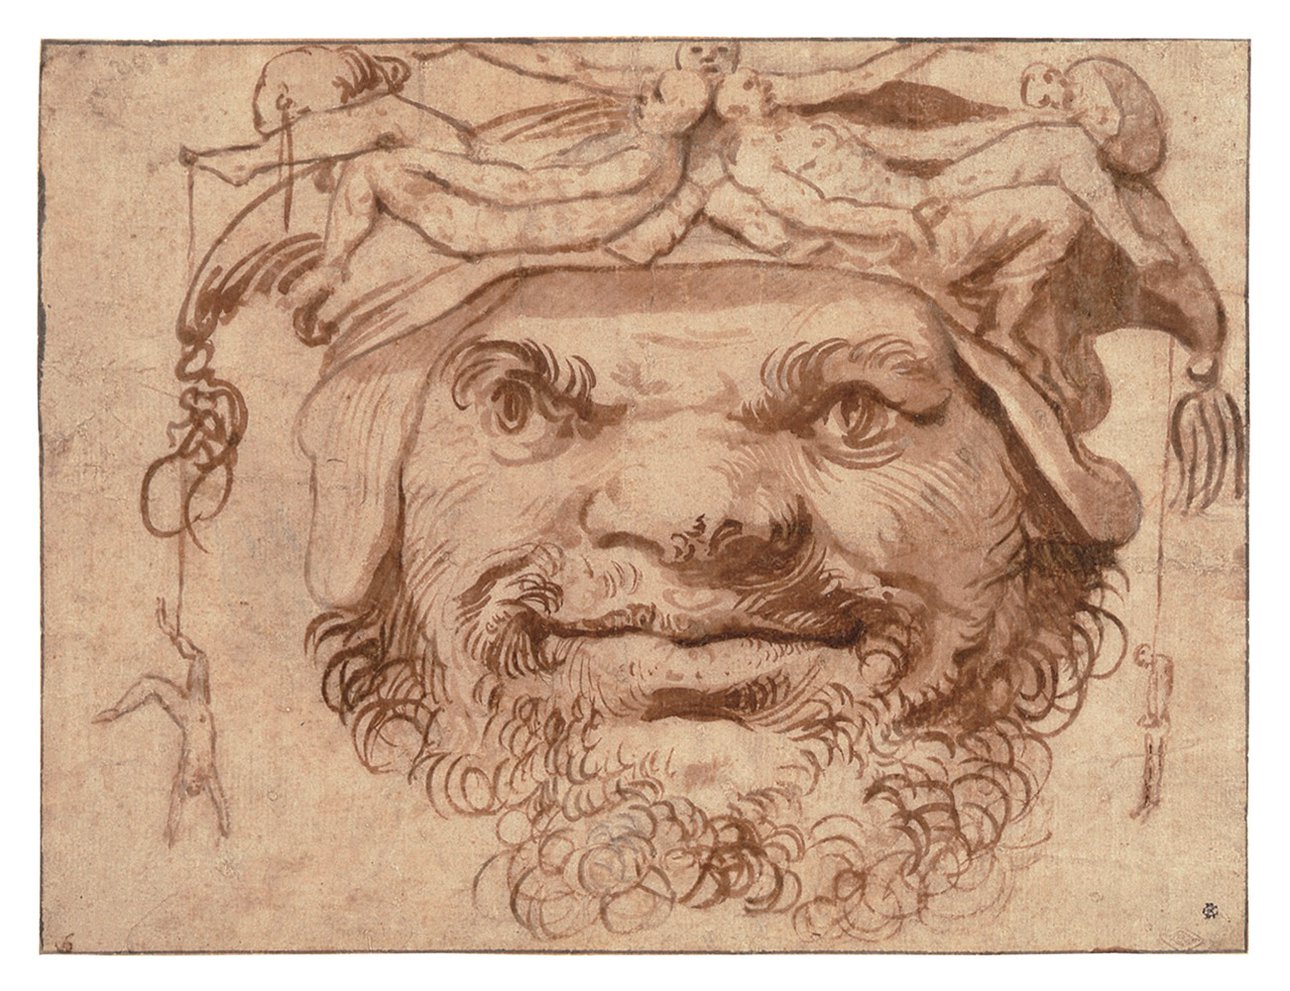 Хусепе де Рибера. «Голова с маленькими фигурками на шляпе». 1630-е. Рисунок. Фото: Museo del Prado, Fundación Focus and the Meadows Museum